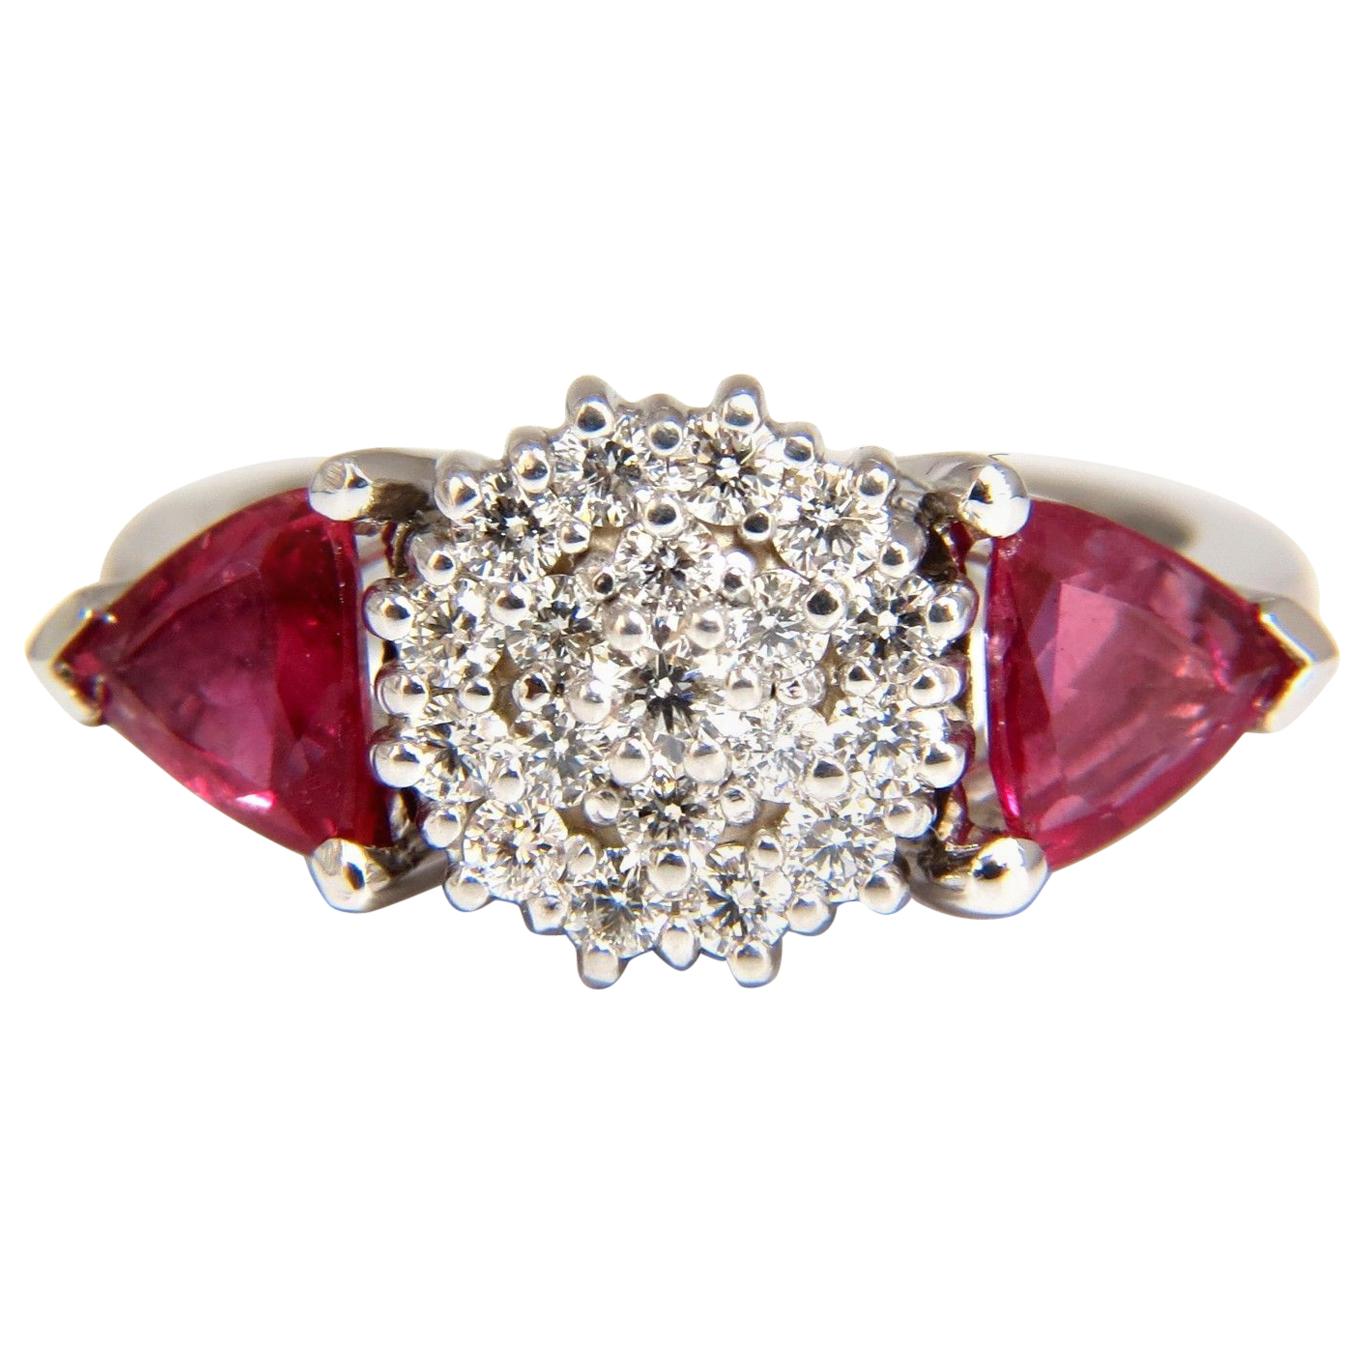 2.00 Carat Natural Pink Sapphire Diamonds Ring 14 Karat Circular Cluster Top For Sale